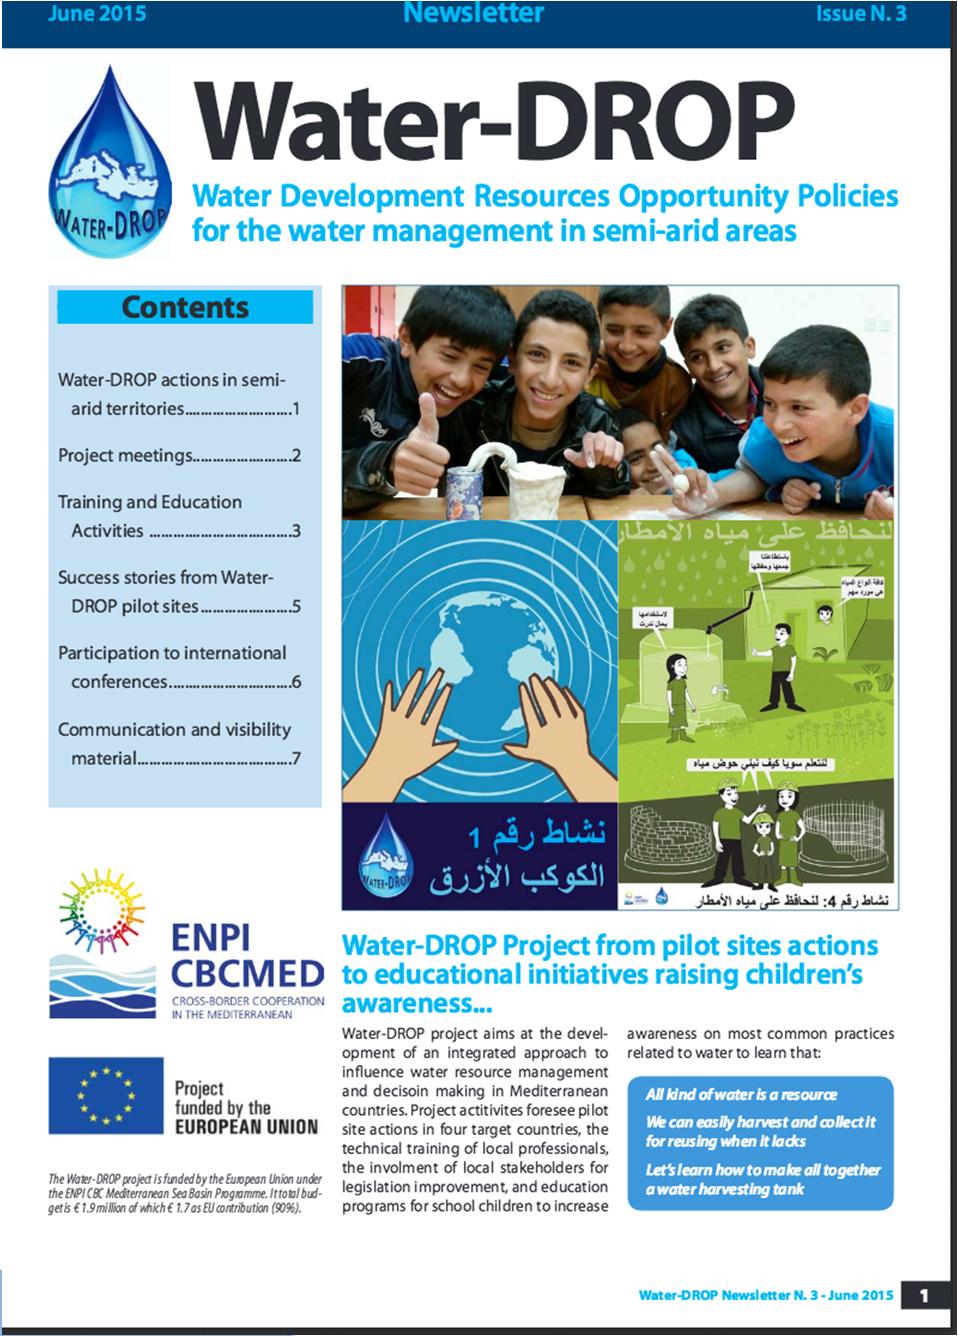 2015 - Amman Water-DROP